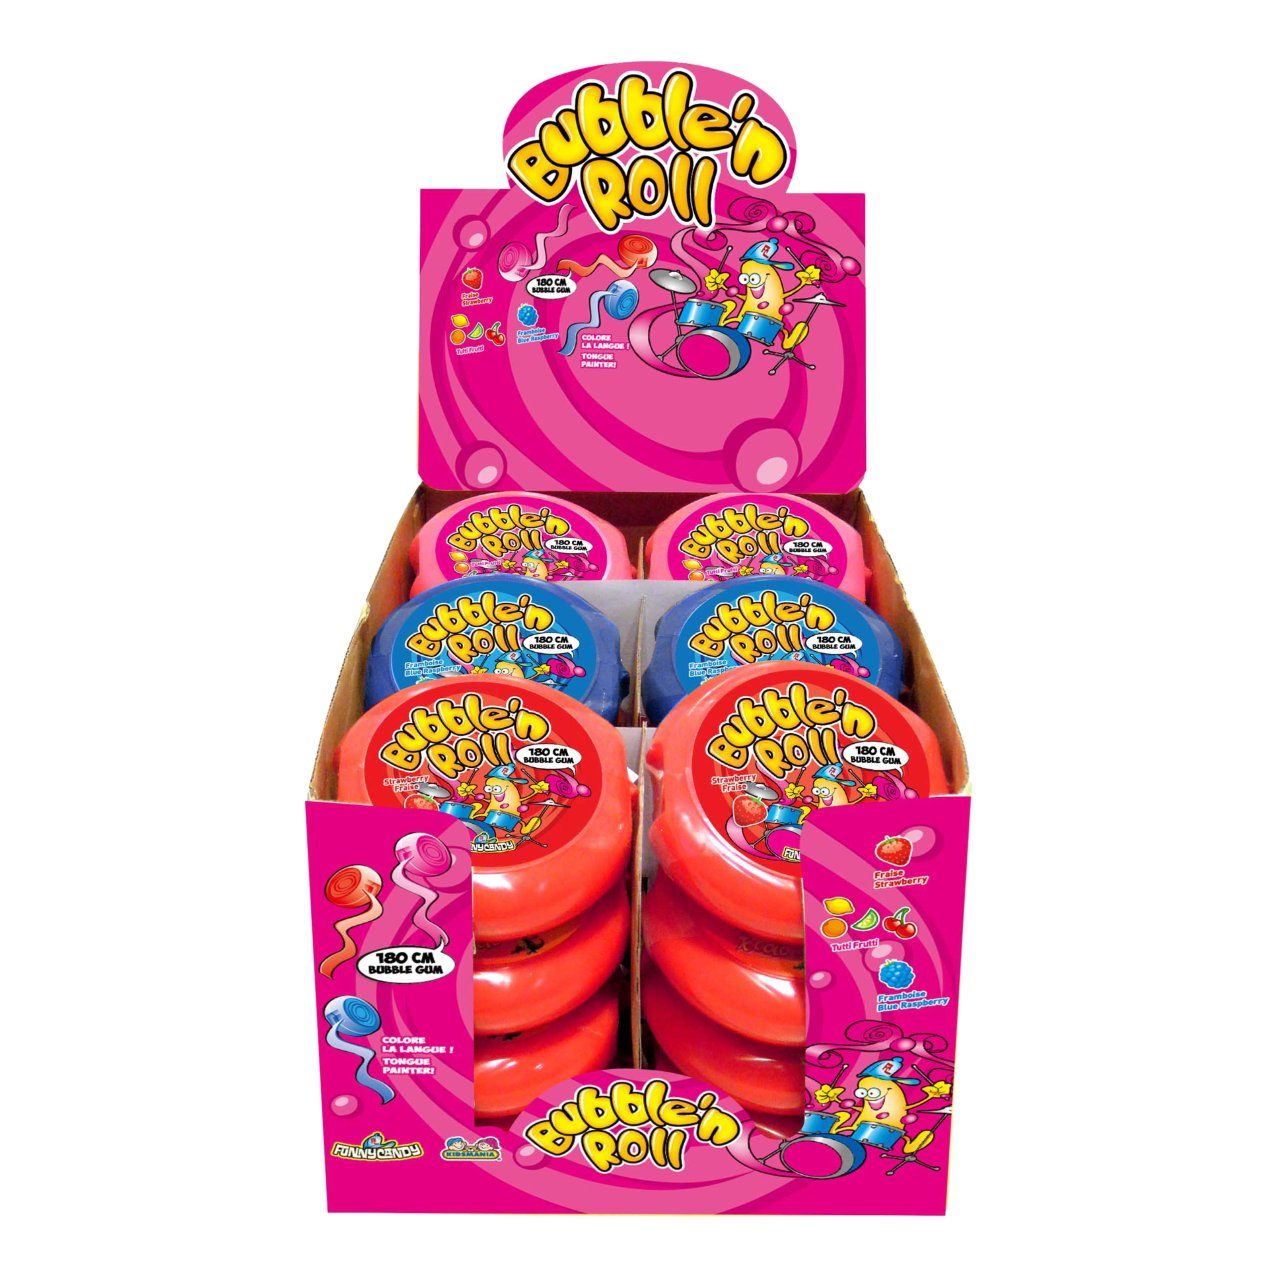 Bubble'n roll tongue painter bubblegum